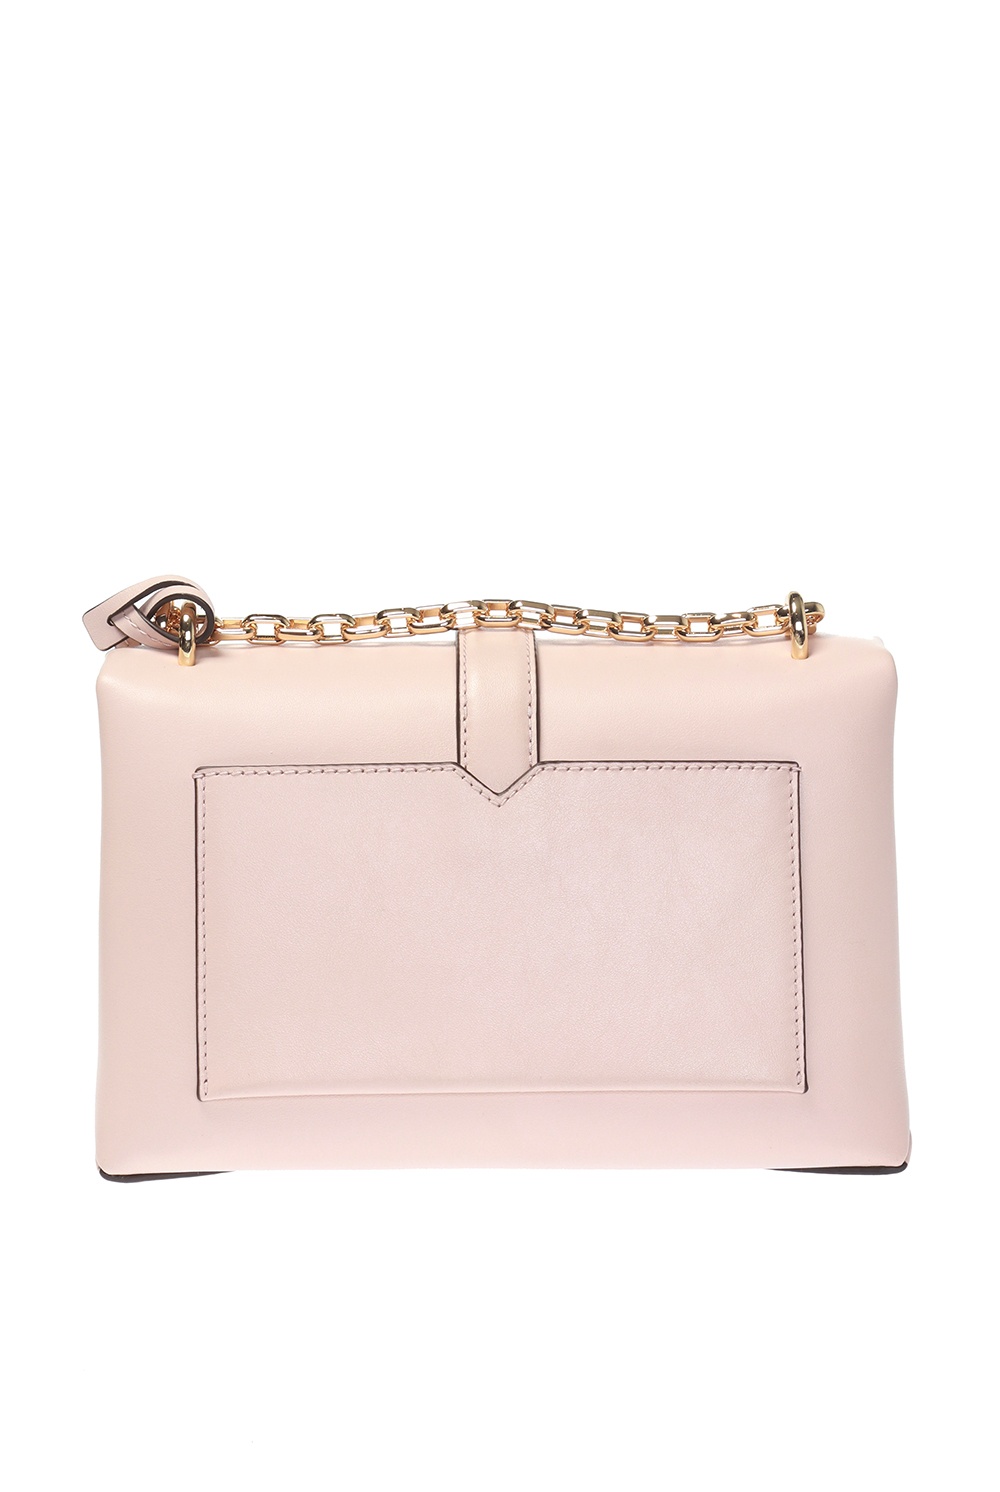 Michael Kors Cece Pink Shoulder Bag 30S9G0EL2L-187 193599034508 - Handbags,  Cece - Jomashop